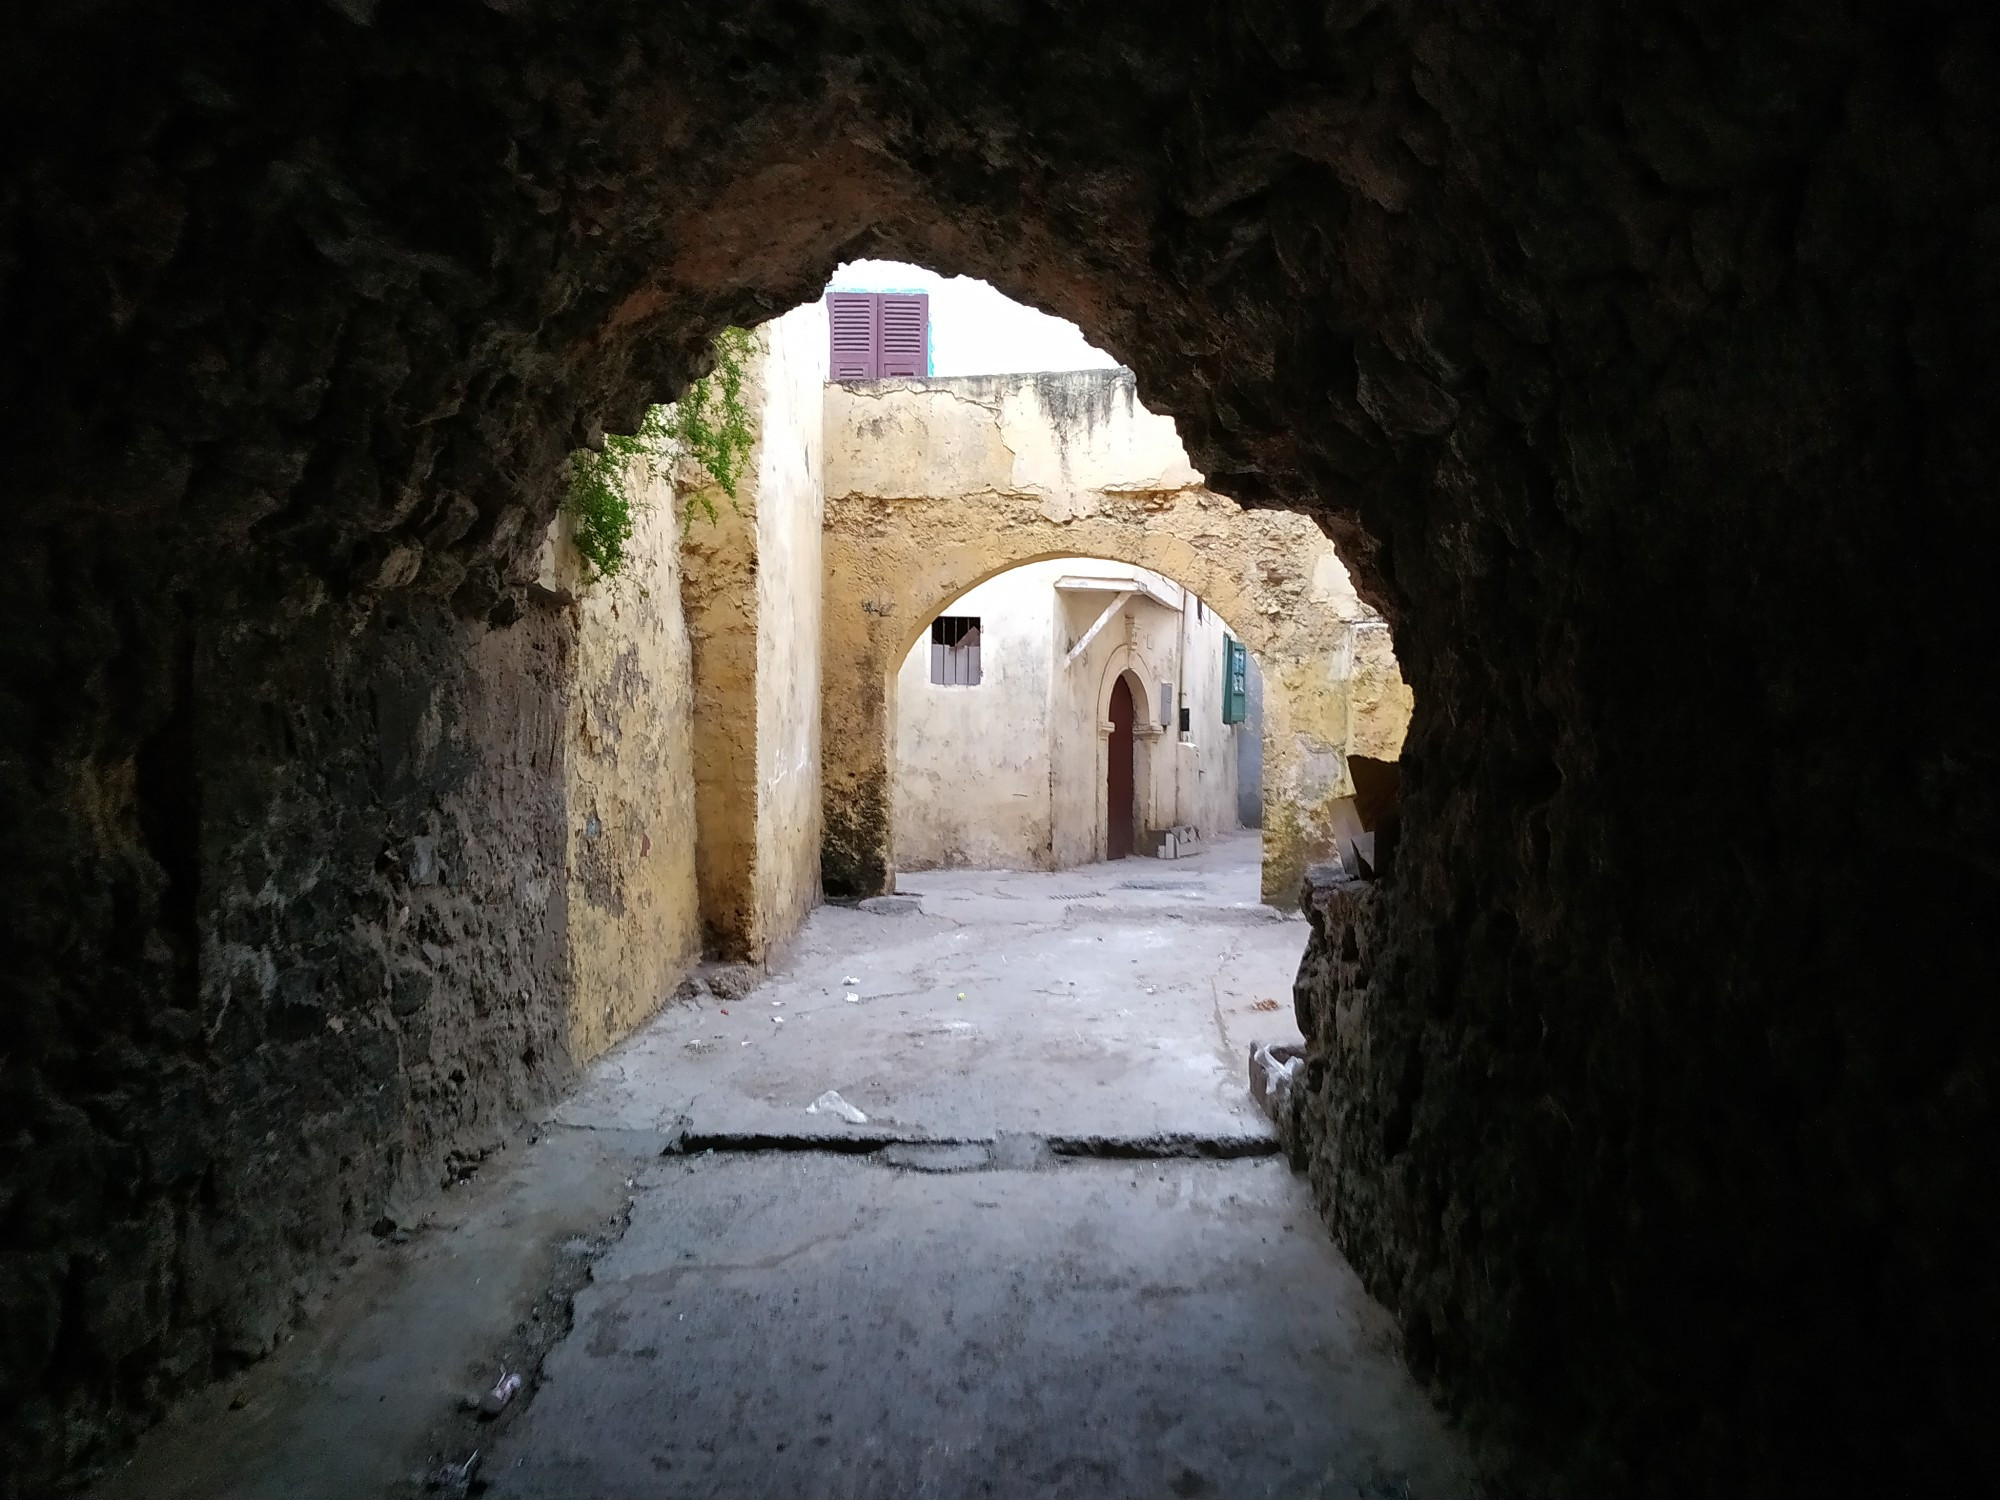 Эль-Джадида. Медина внутри португальской крепости Мазаган. (16.03.2020)